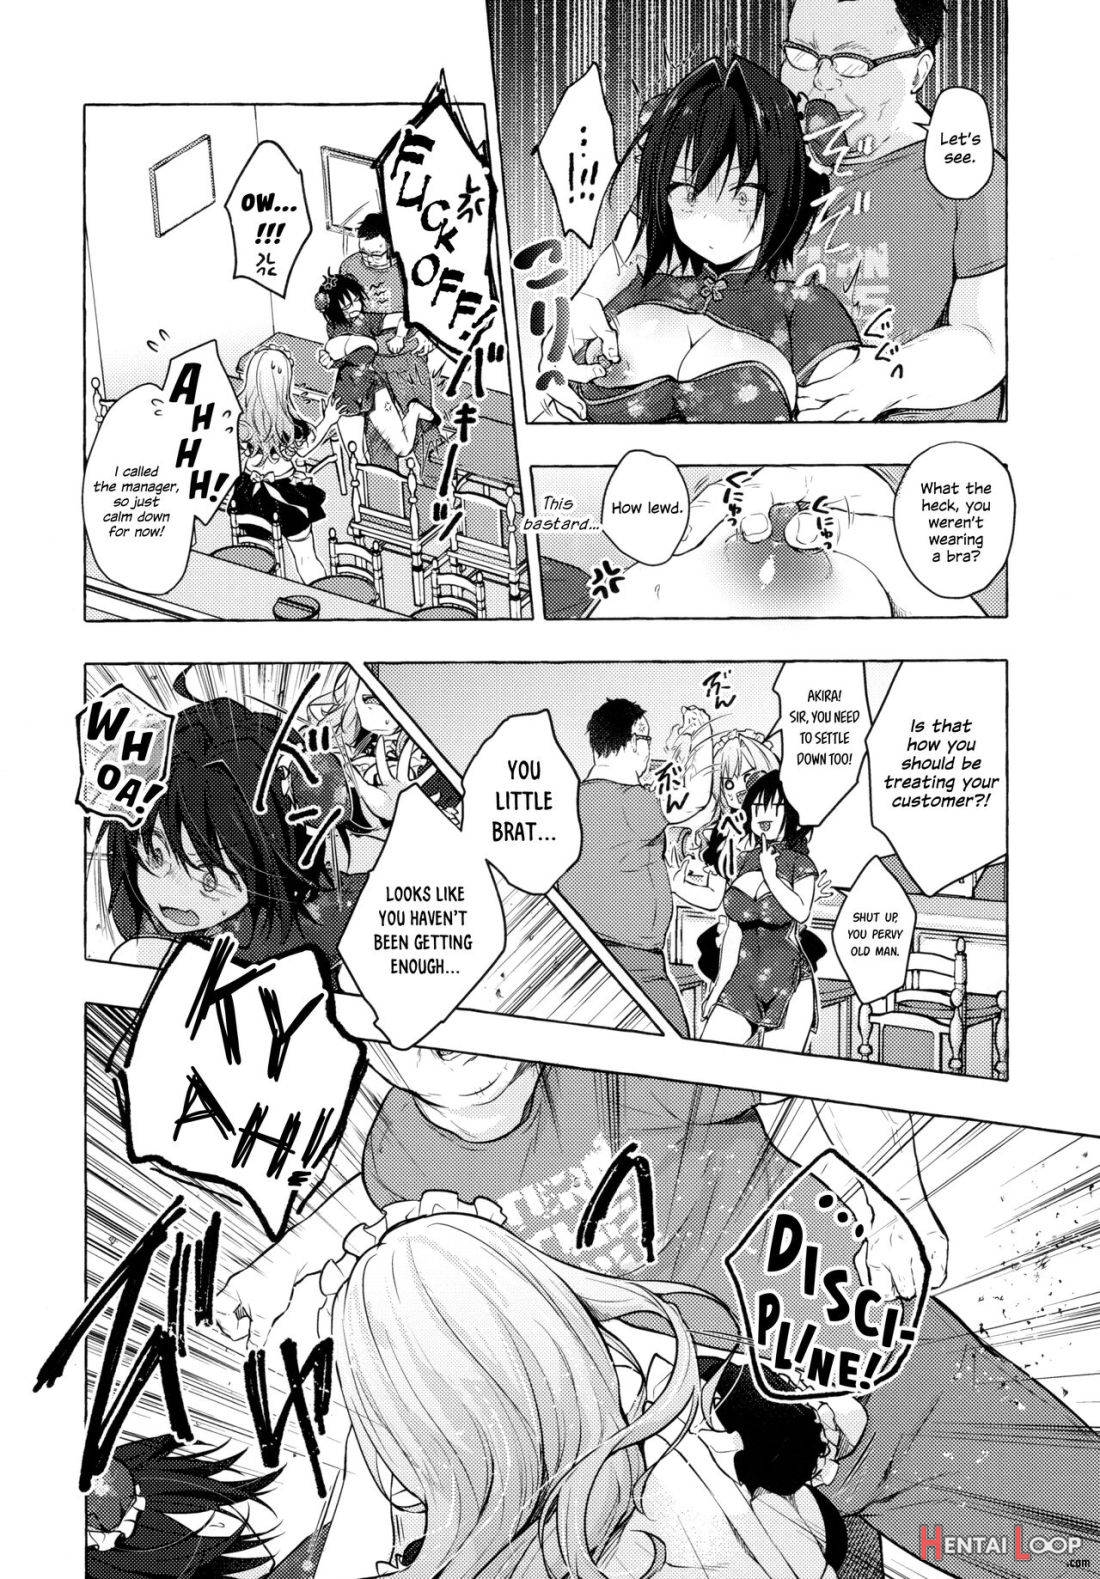 TS Akira-kun no Seiseikatsu 6 page 6